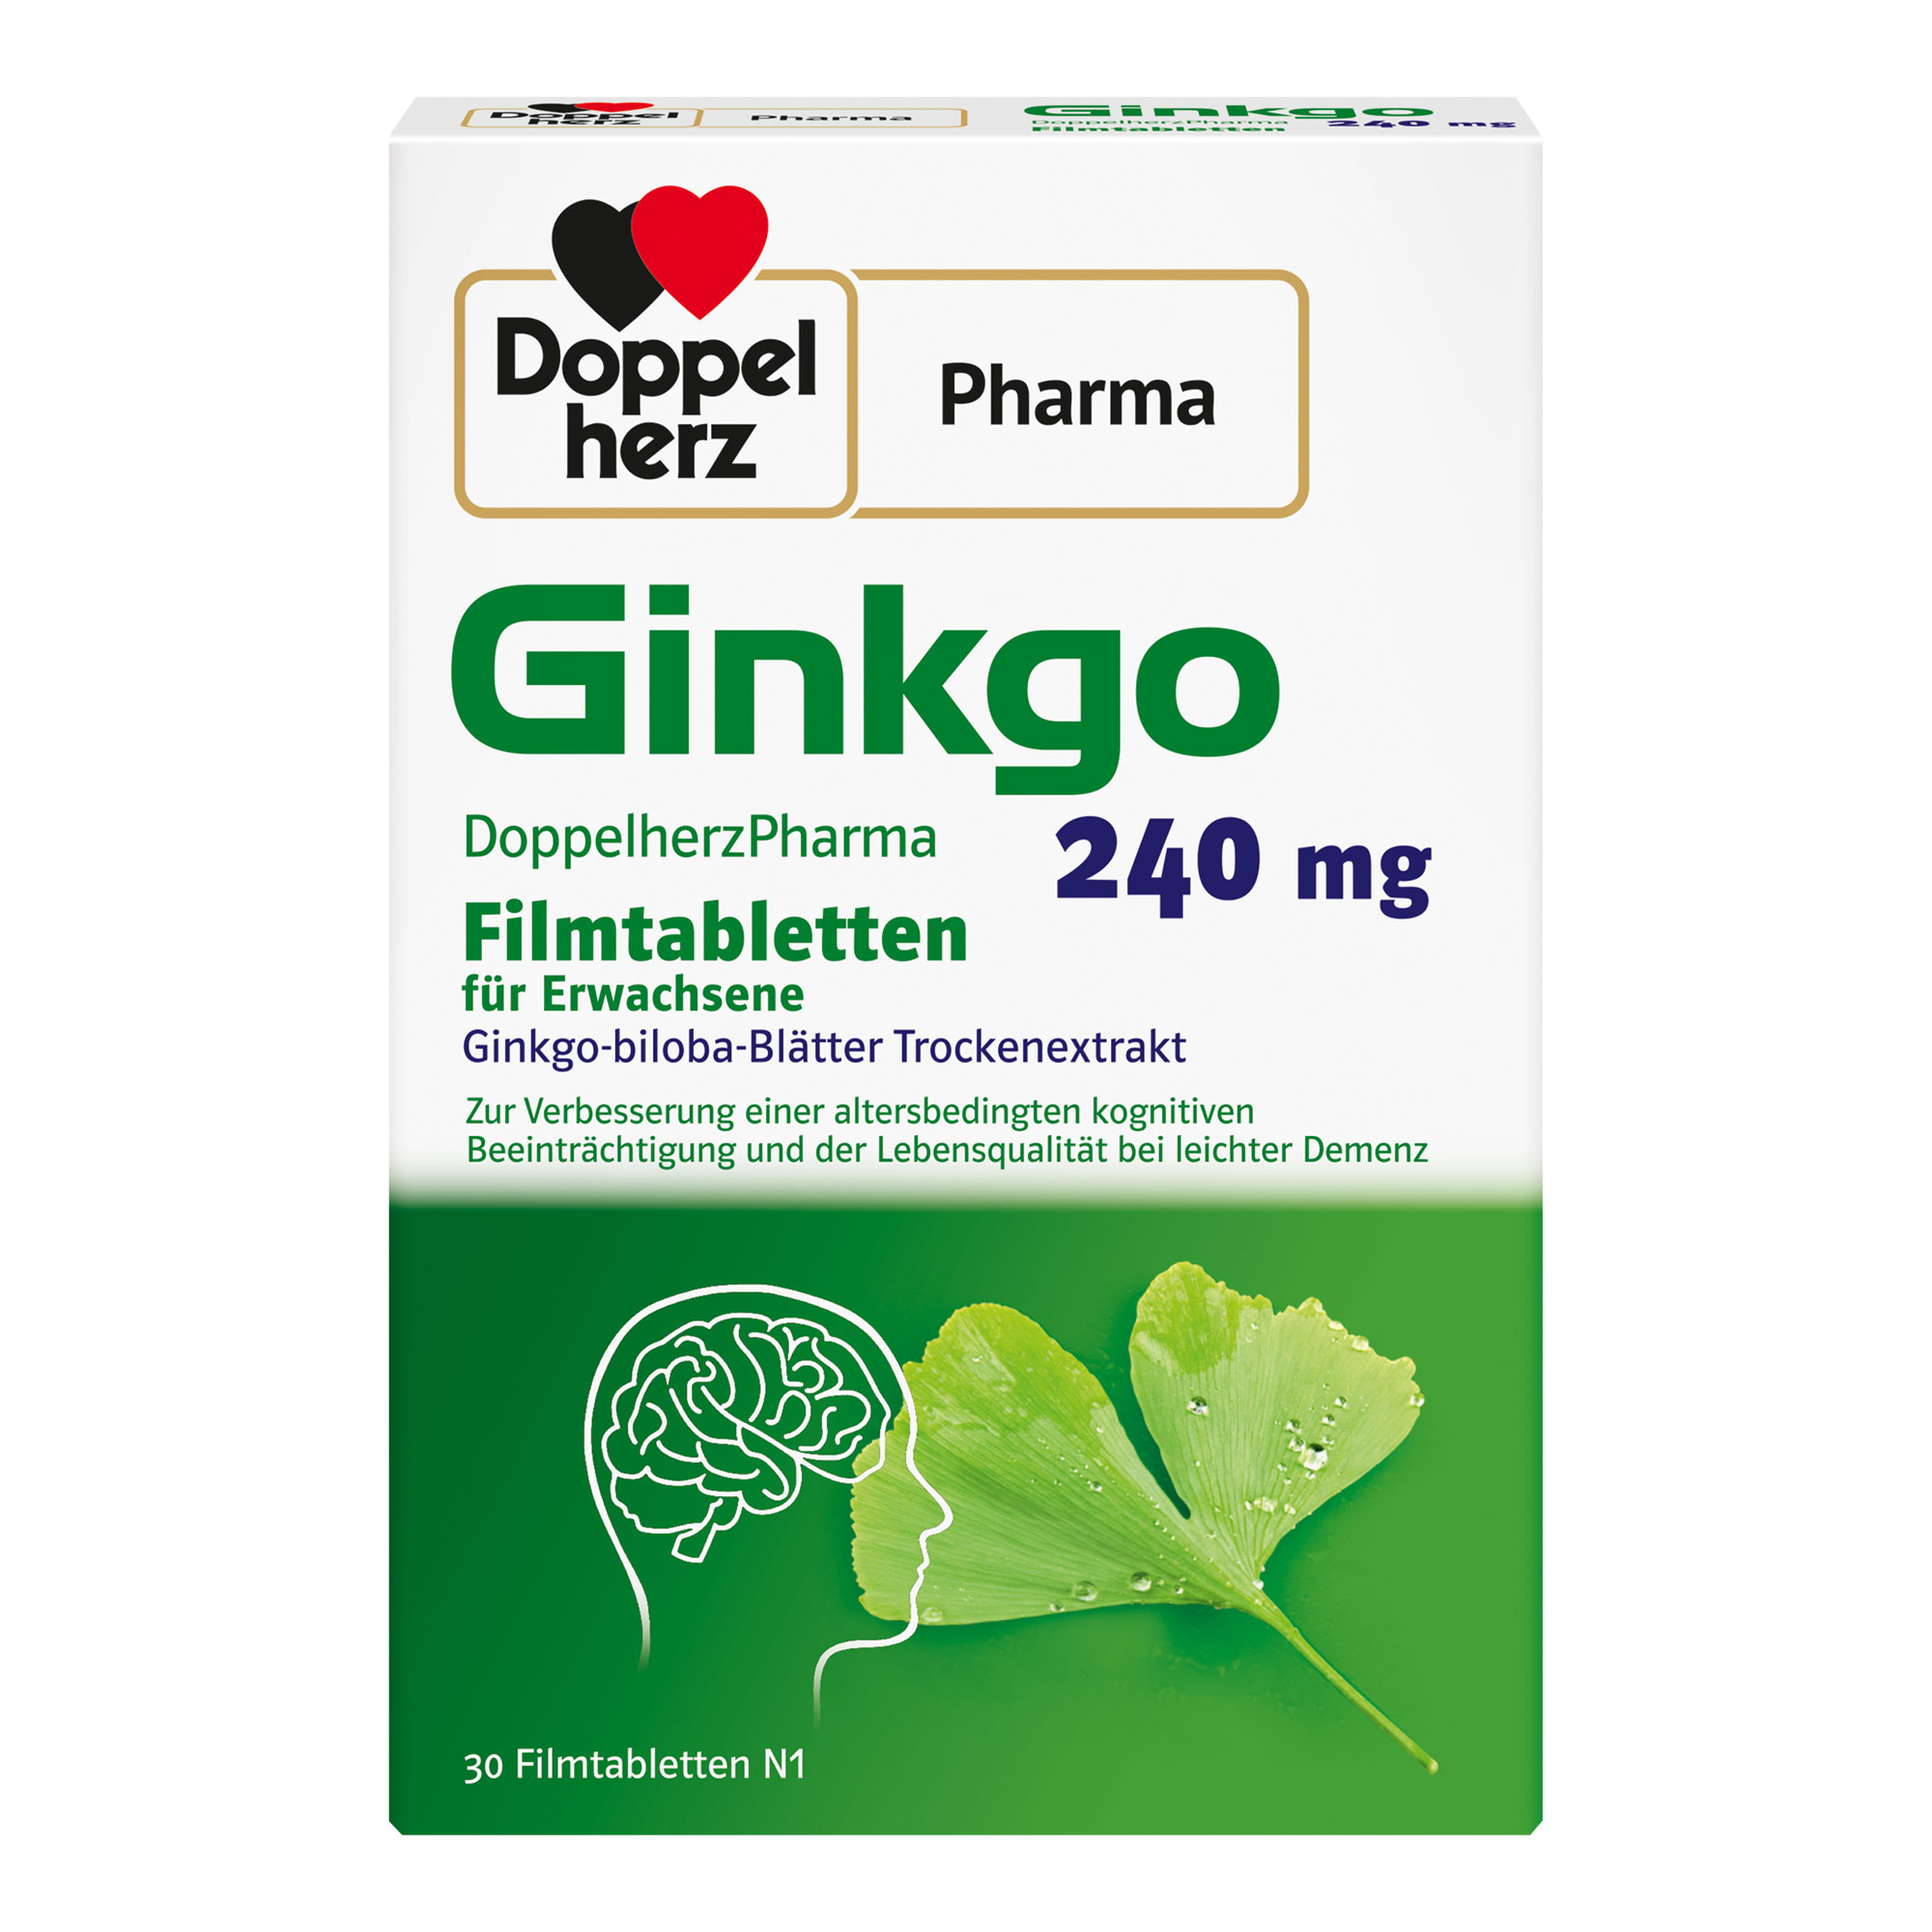 Pflanzliches Arzneimittel mit 240 mg Ginkgo-biloba-Blätter Trockenextrakt. Zur Anwendung bei leichter Demenz und altersbedingter kognitiver Beeinträchtigung.